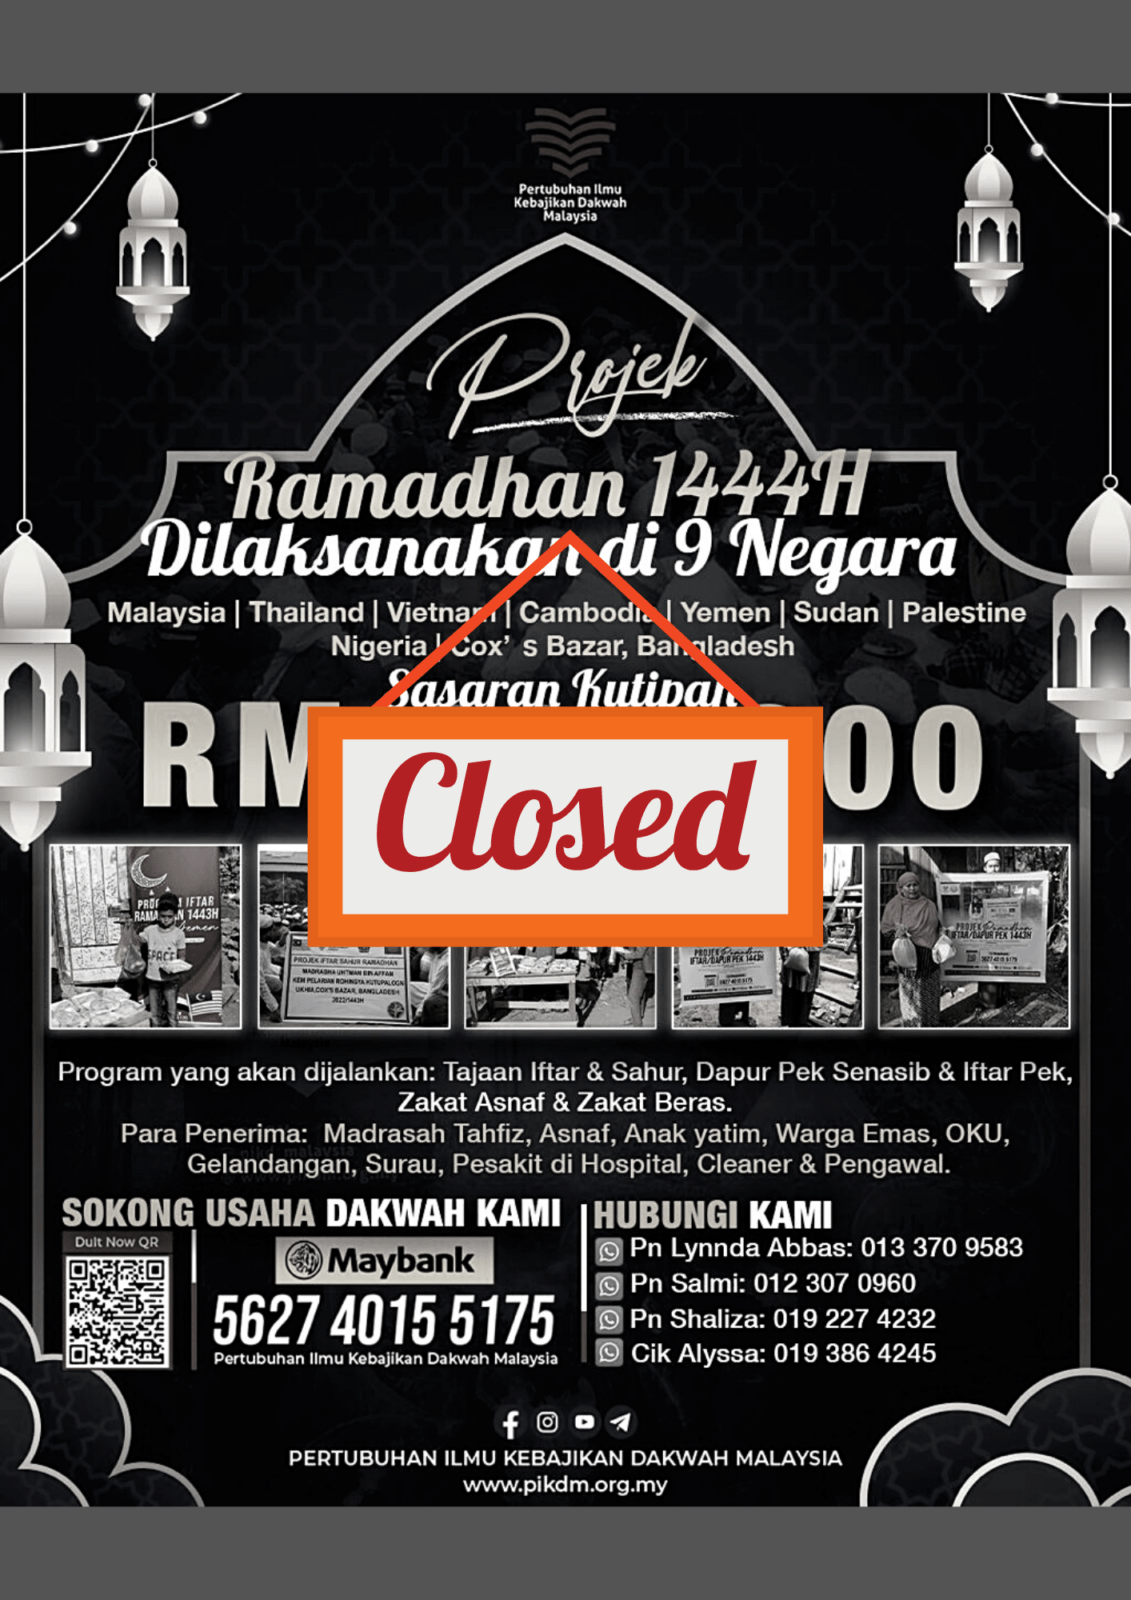 Projek-Ramadan-1444H-Closed